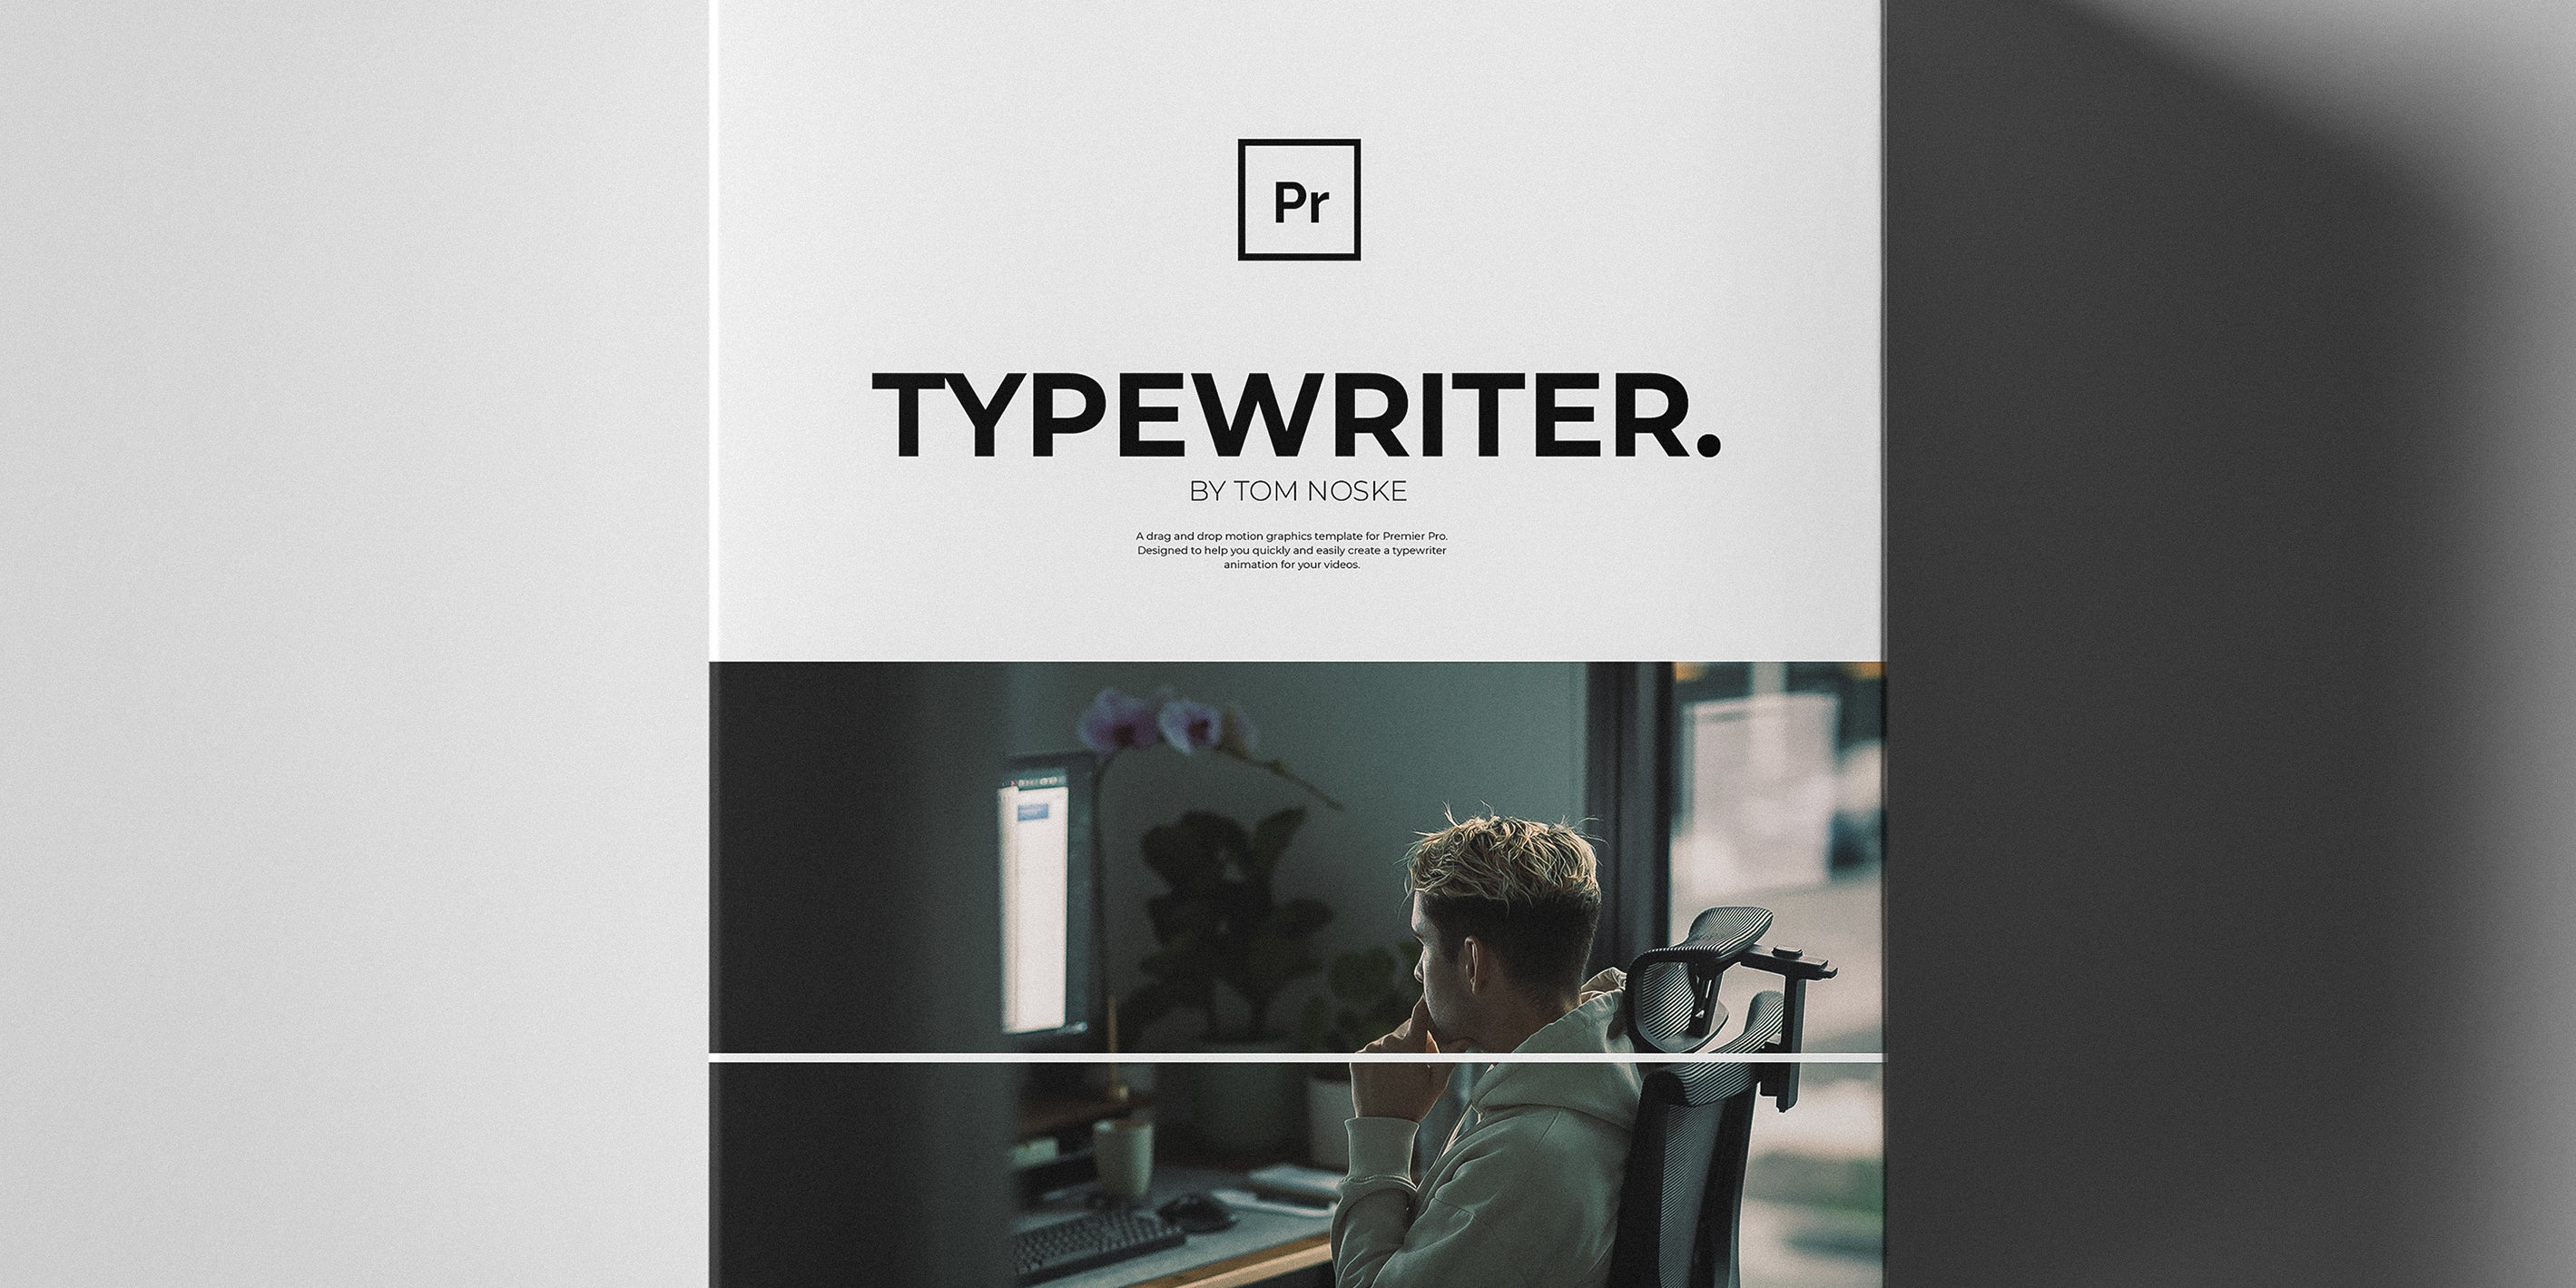 Typewriter effect - Tom Noske